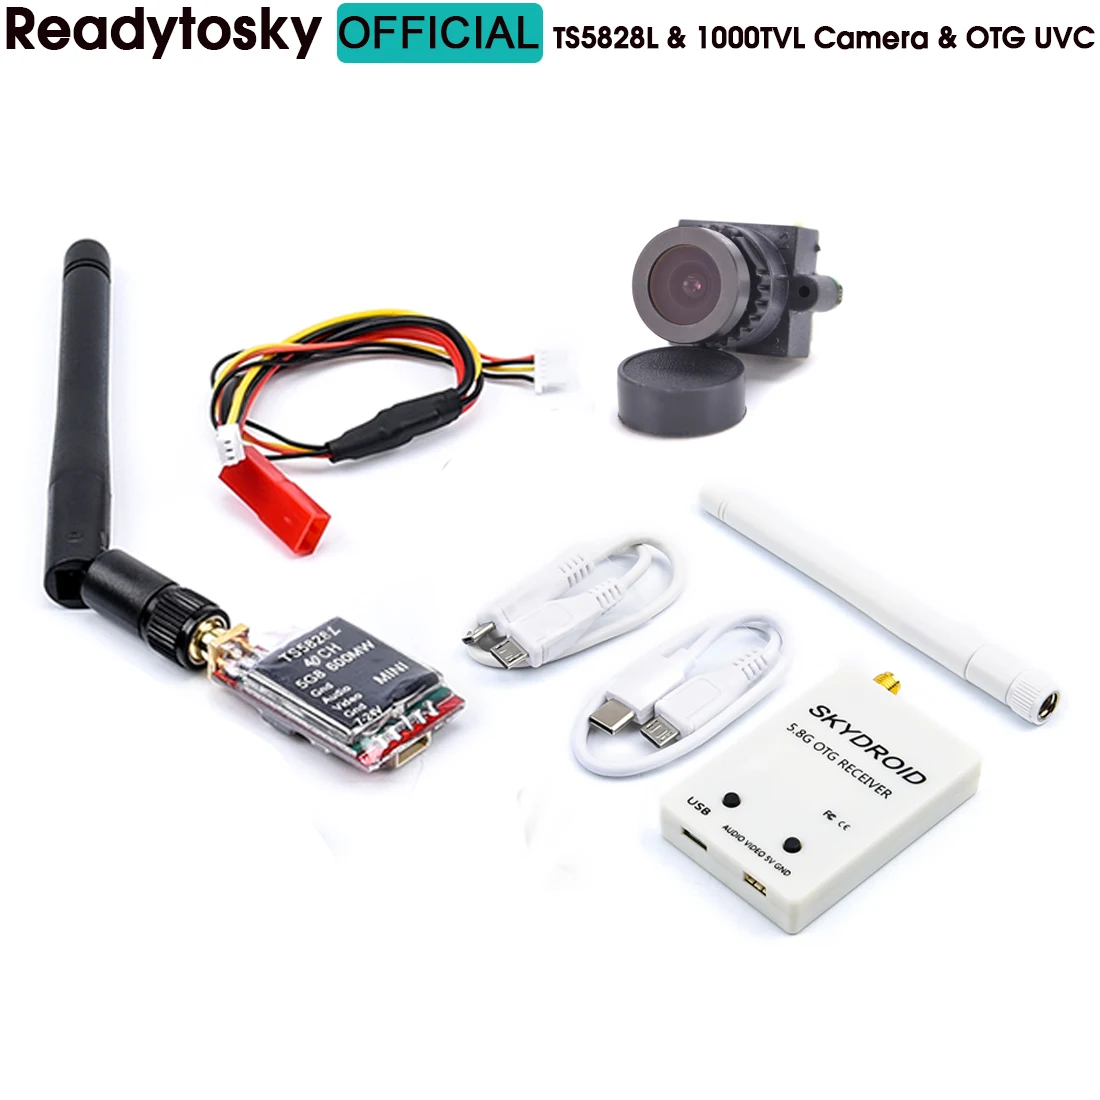 

Готов к использованию 5,8G Skydroid W/антенна OTG UVC 150CH Полный канал и TS5828L передатчик и FPV 1000TVL камера для RC камеры дрона